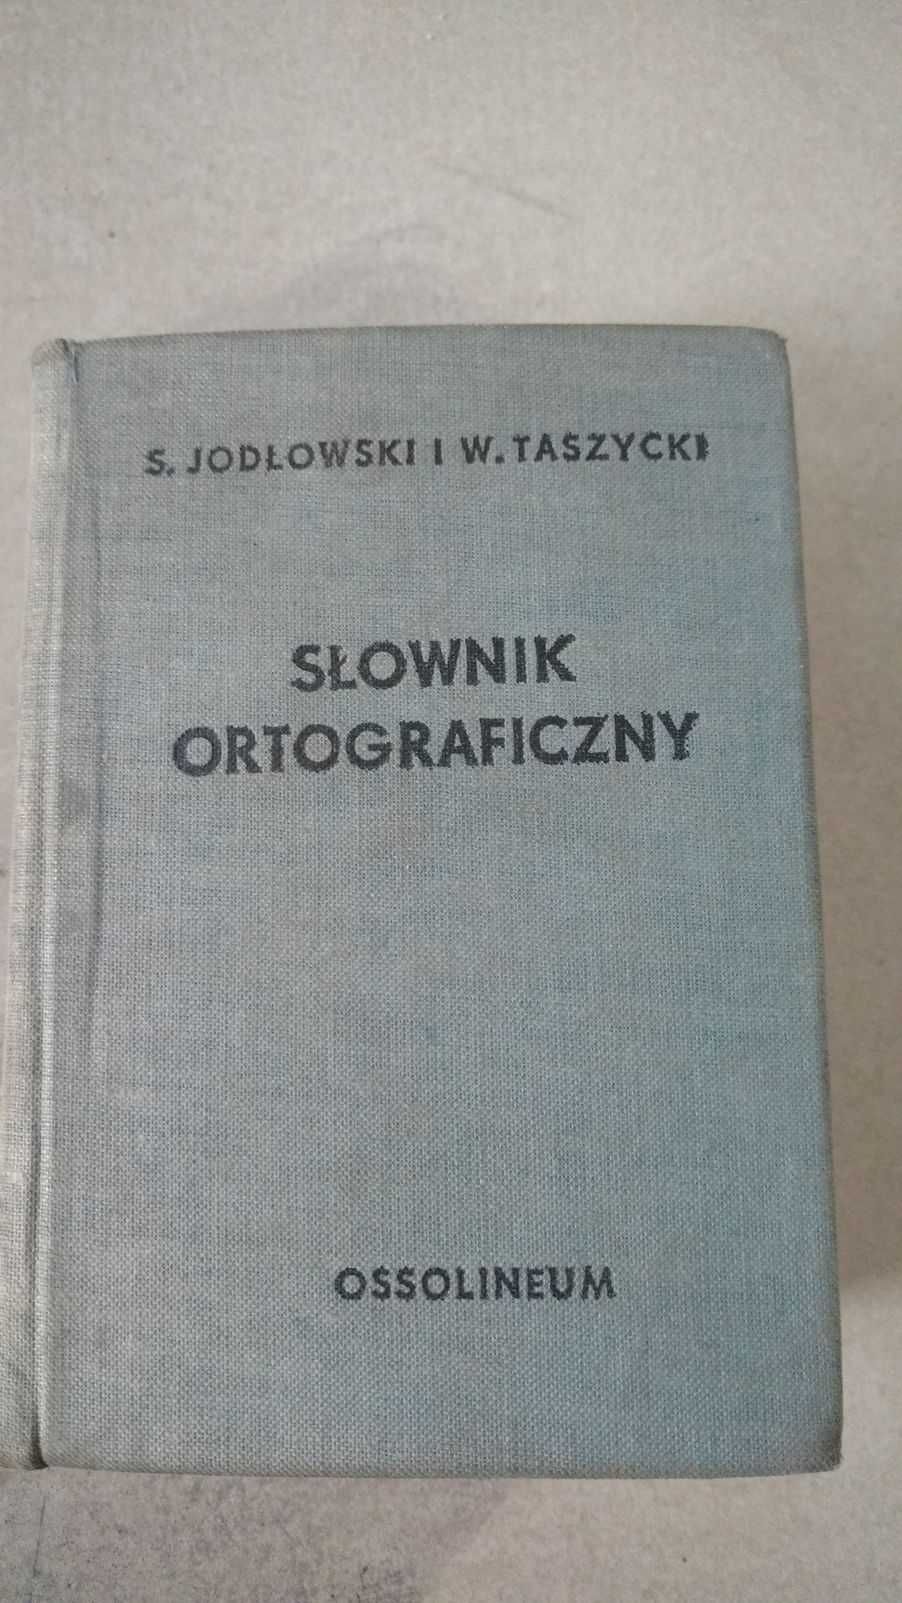 Słownik ortograficzny I prawidła pisowni polskiej S. Jodłowski